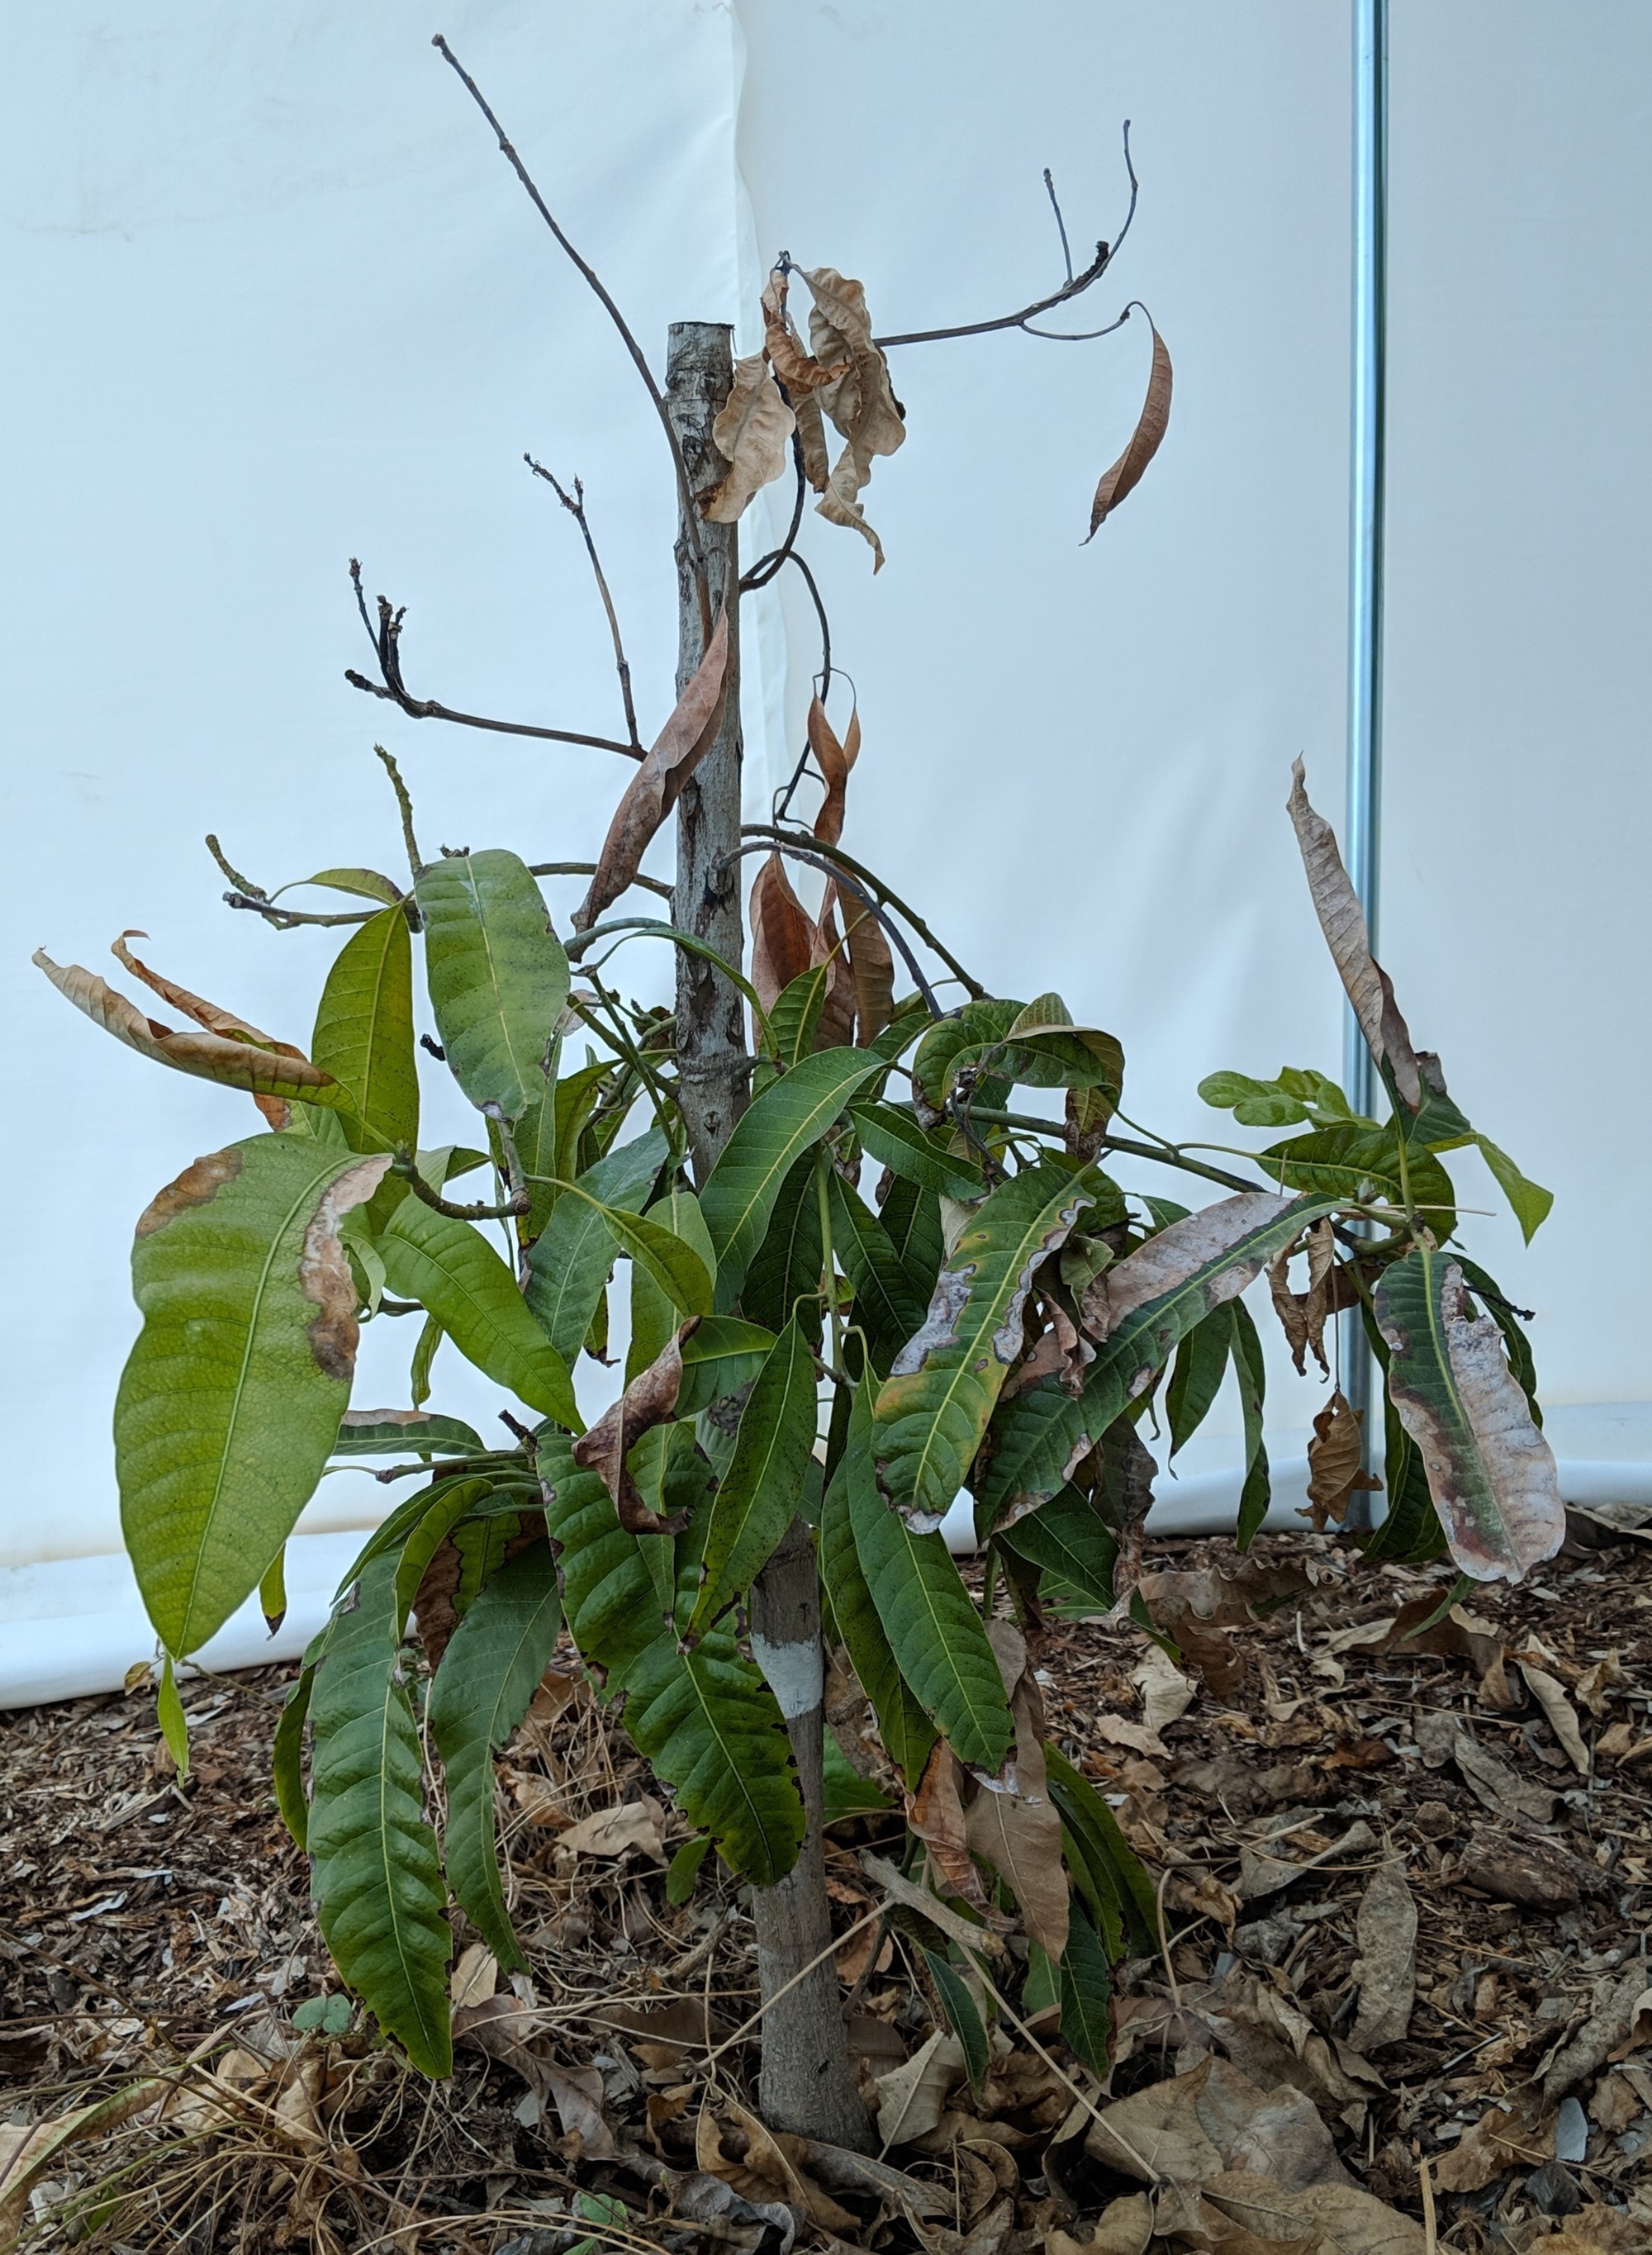 A plant, tree, bush, shrub or vine